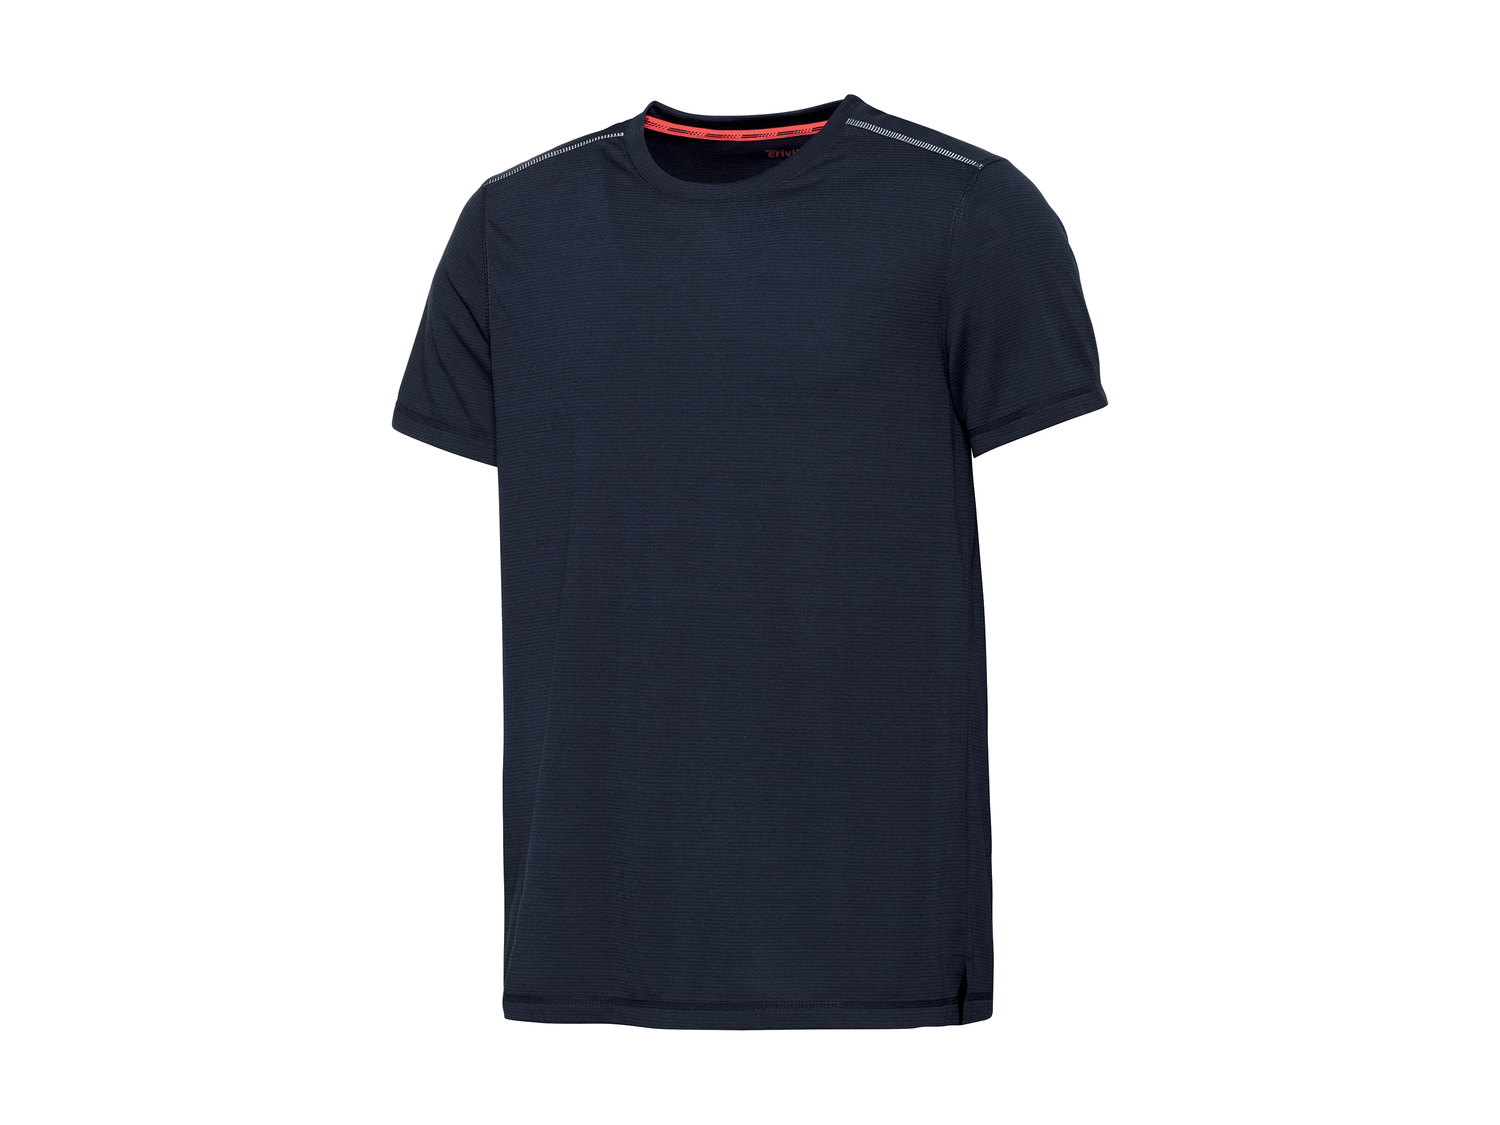 T-shirt technique homme , le prix 4.99 € 
- Du M au XL selon modèle.
- Ex. ...